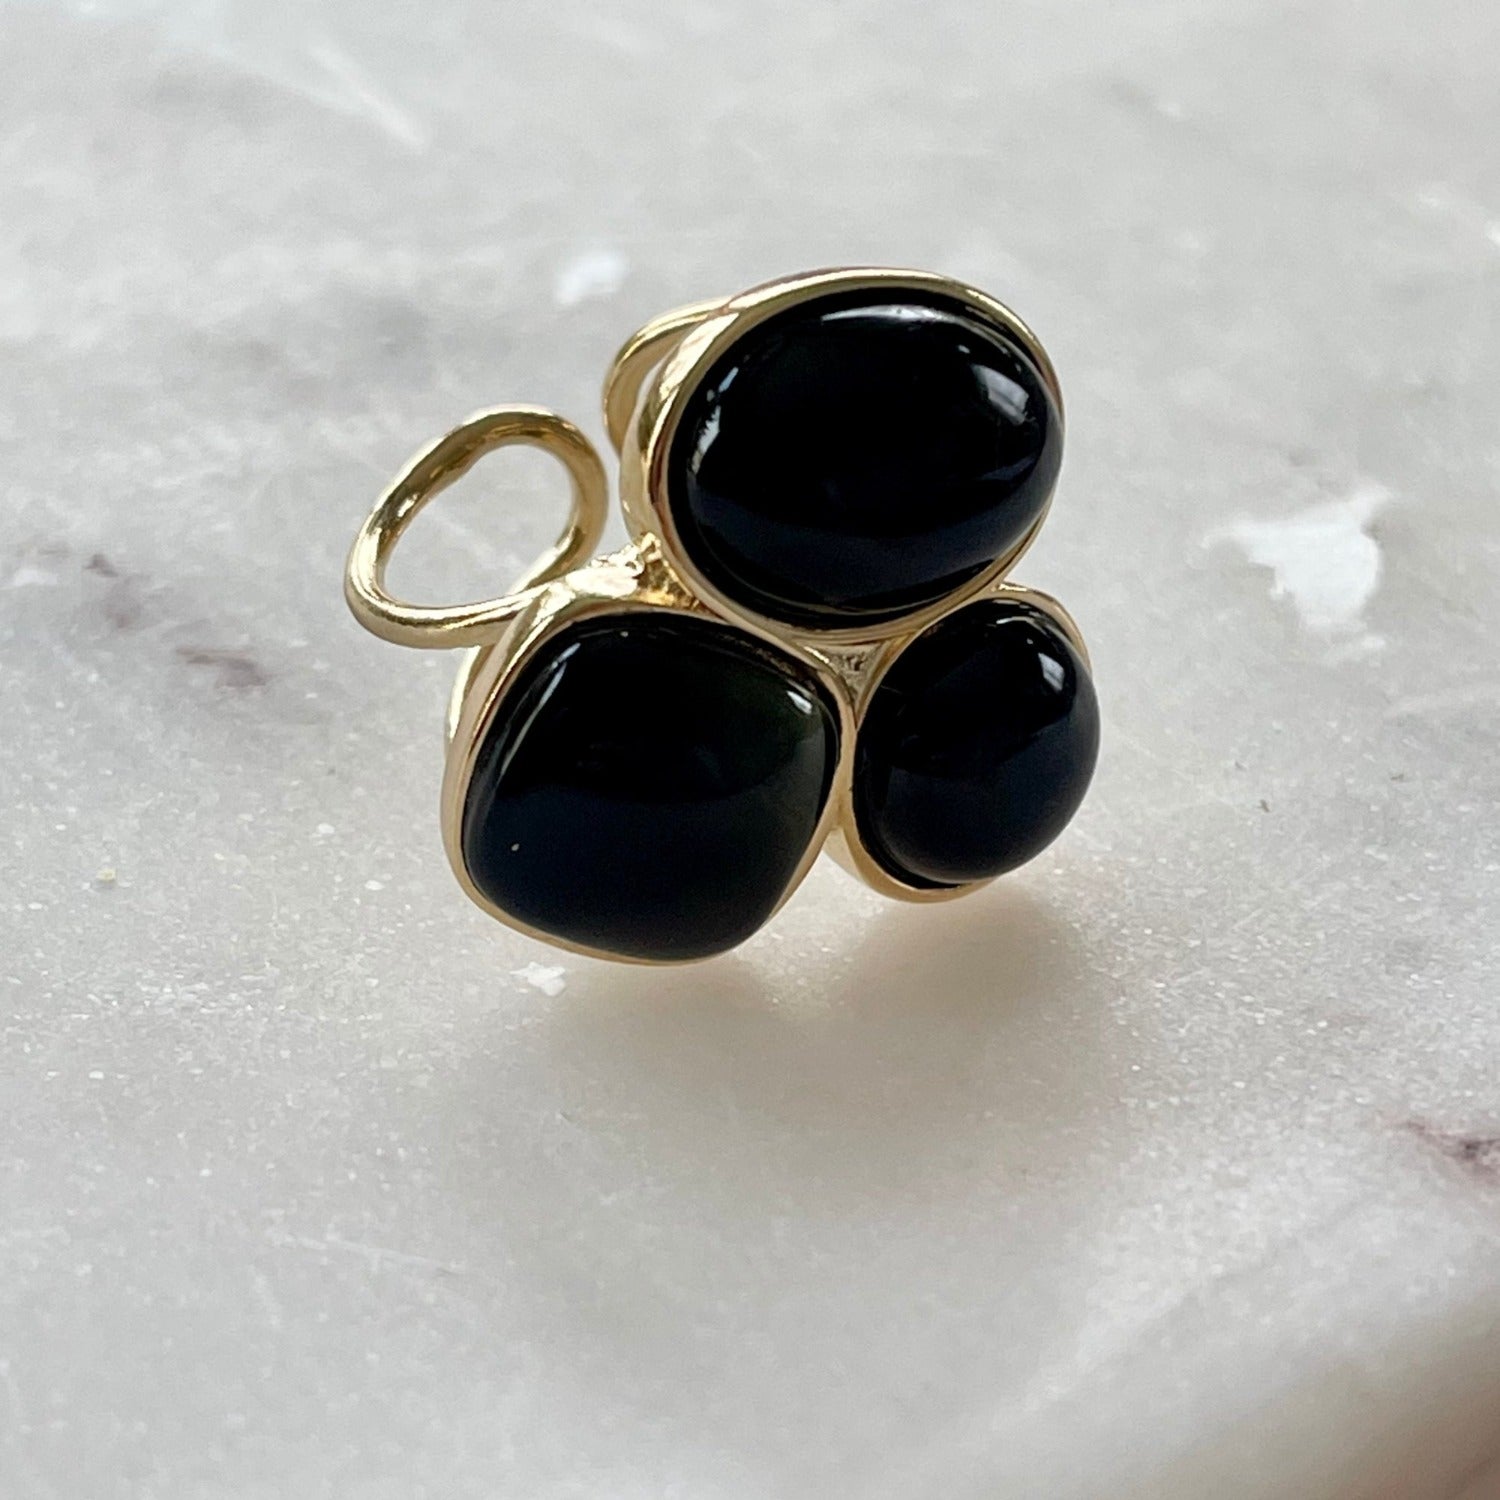 Der Ring "MARIANA" mit natürlichen schwarzen Achatsteinen strahlt pure Eleganz aus. Ein offener, verstellbarer Cocktailring. Dieser Ring ist perfekt für Frauen, die elegante und auffallende Stücke schätzen